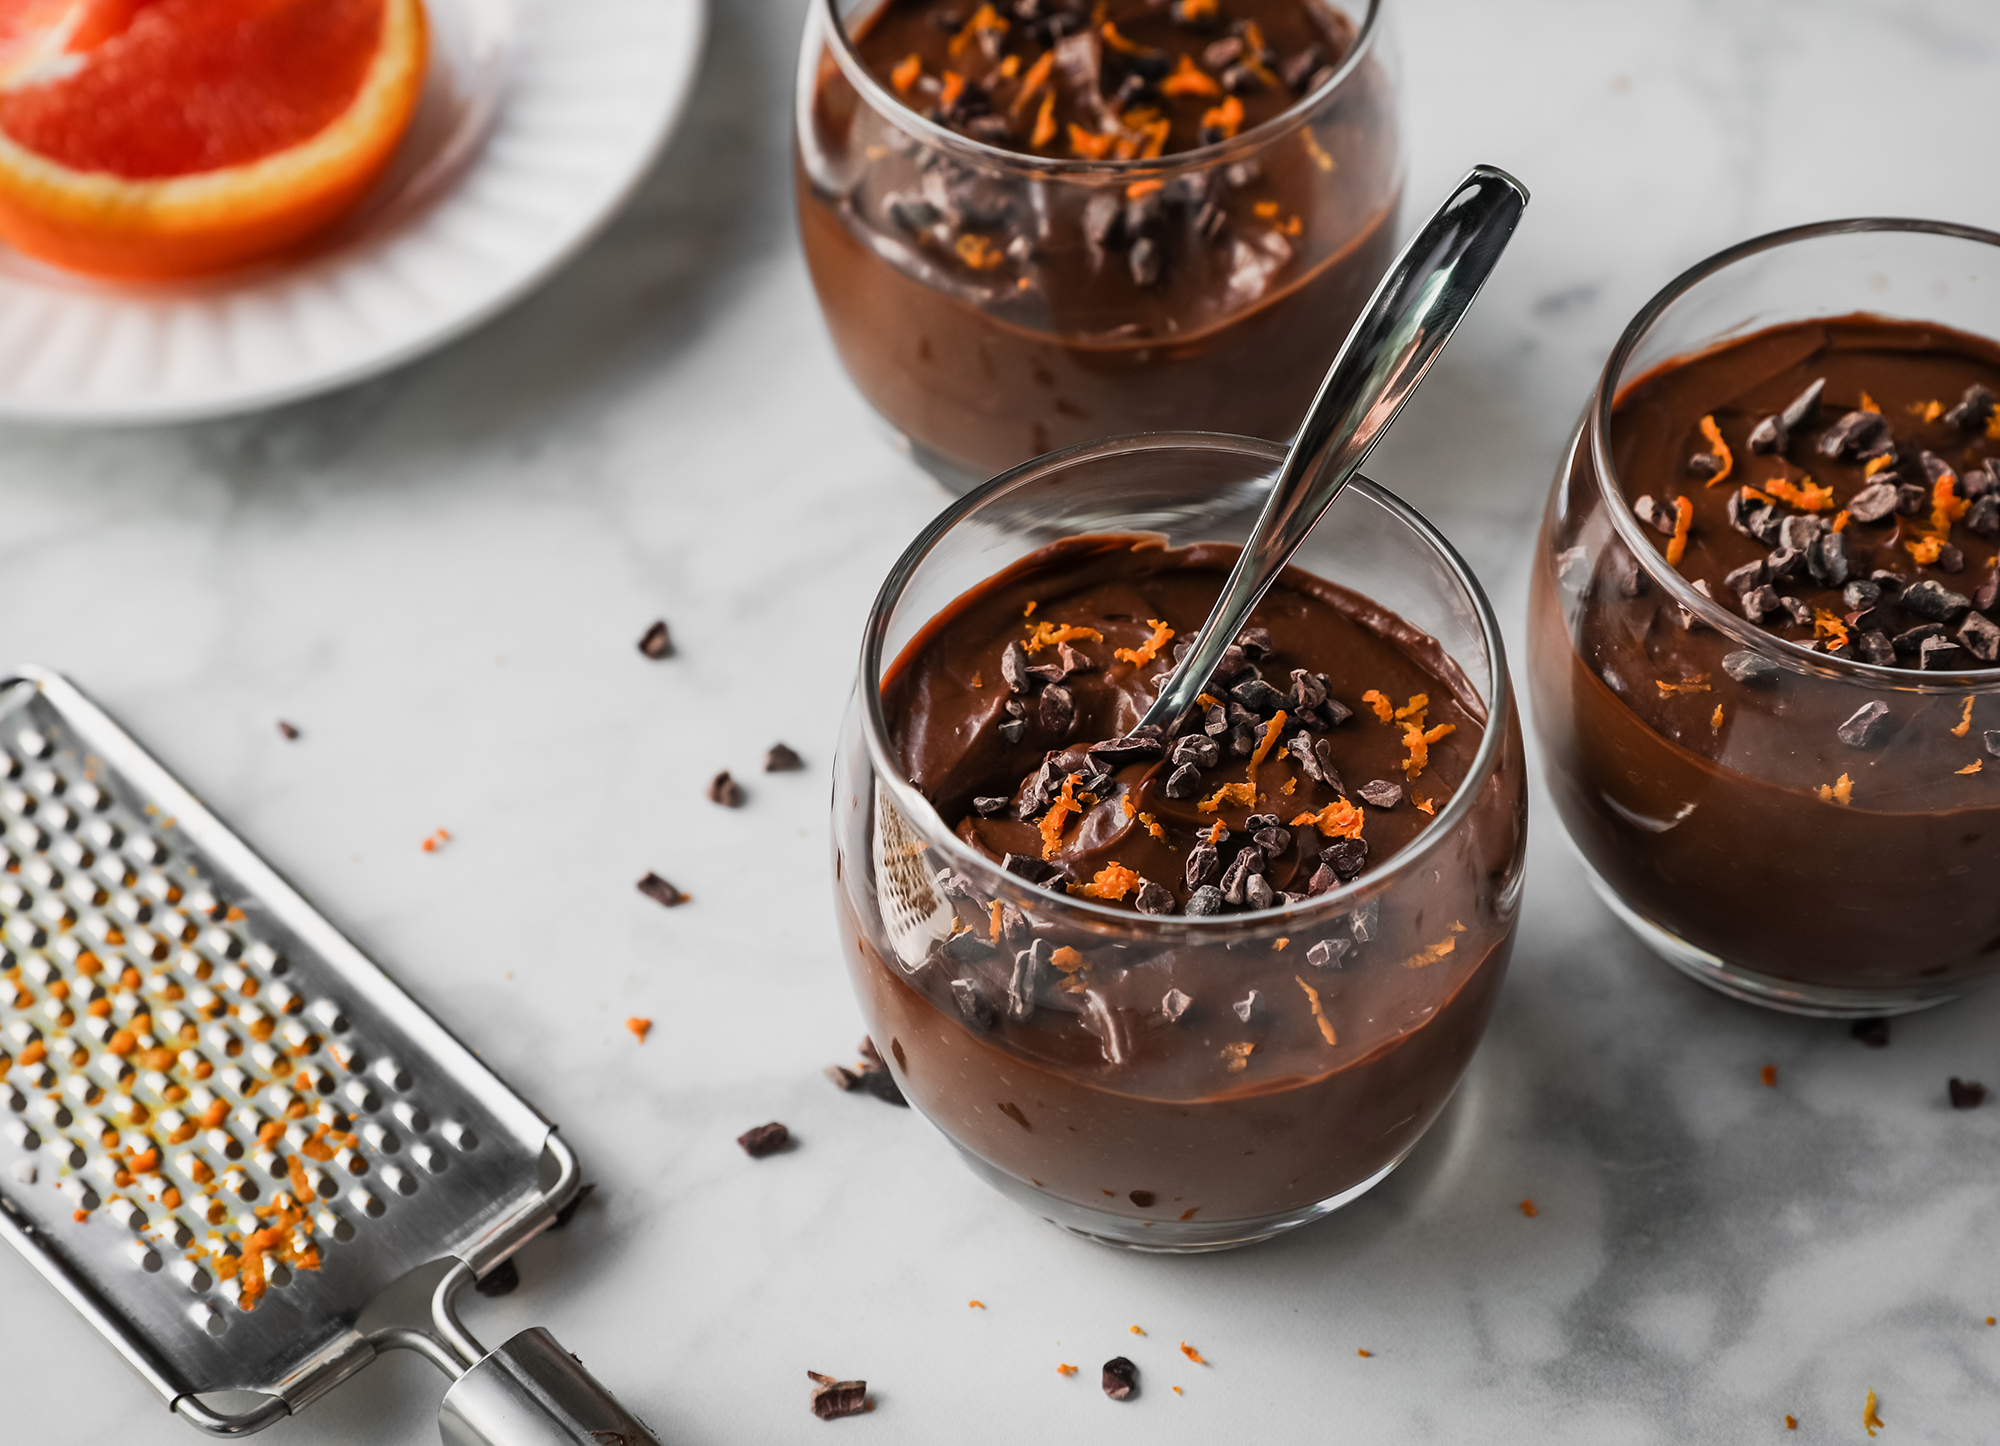 Schokoladen Orangen Pudding — Rezepte Suchen